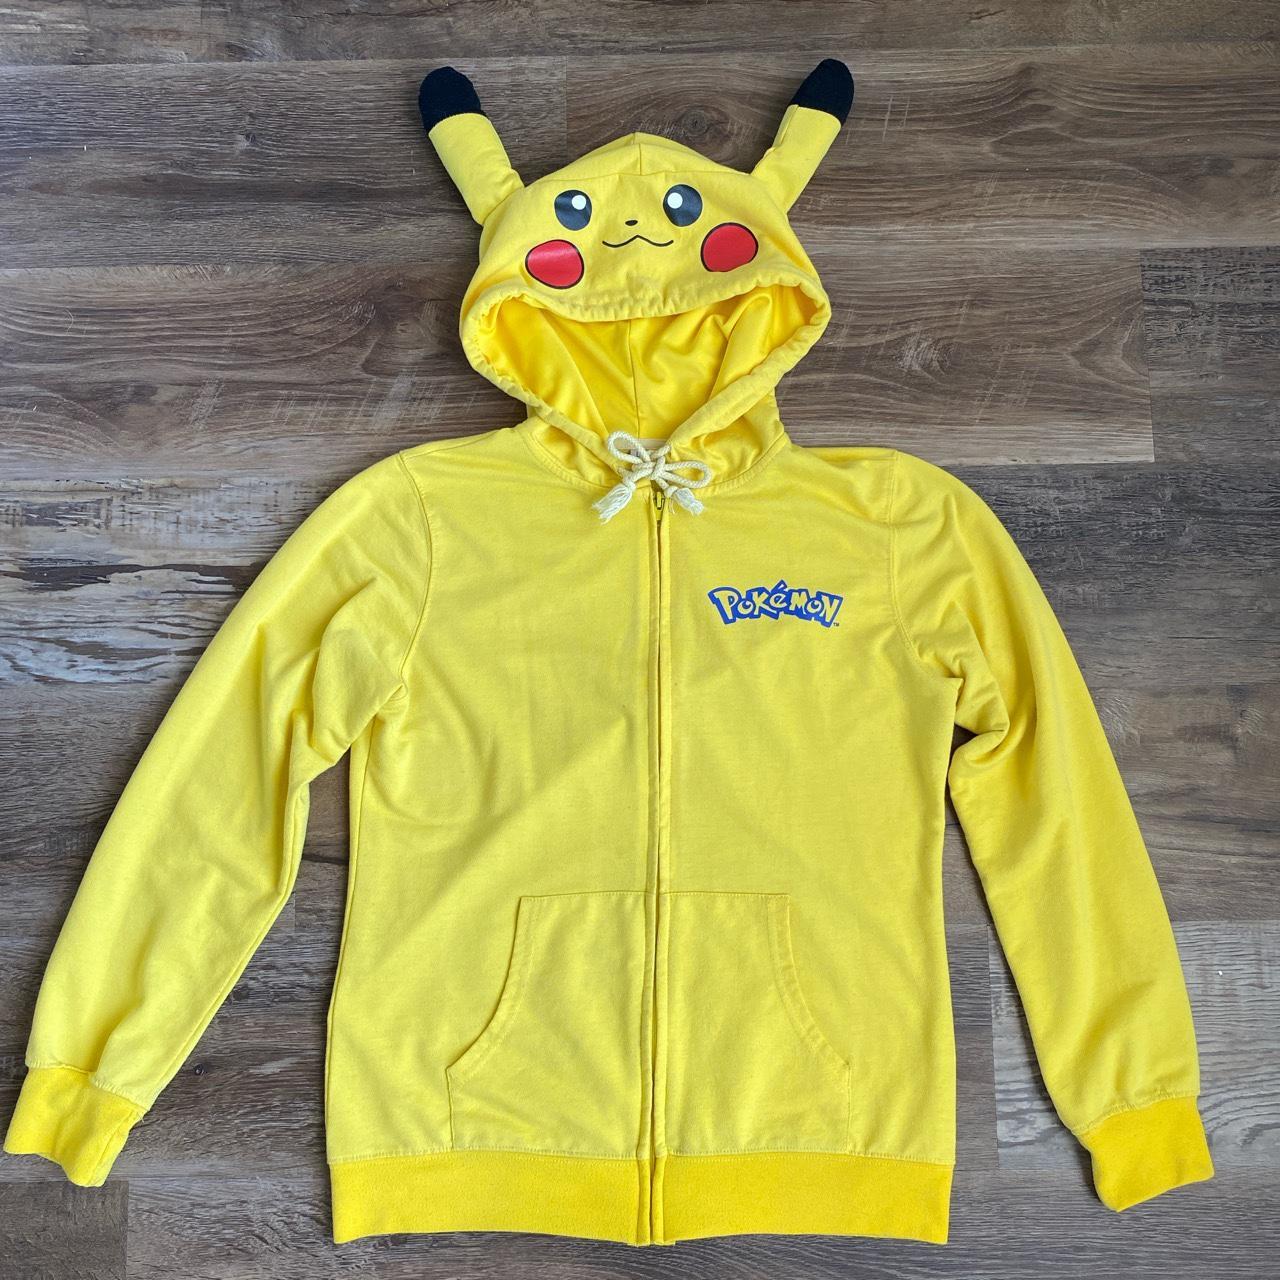 pokémon pikachu zip up jacket with hoodie kids L... - Depop